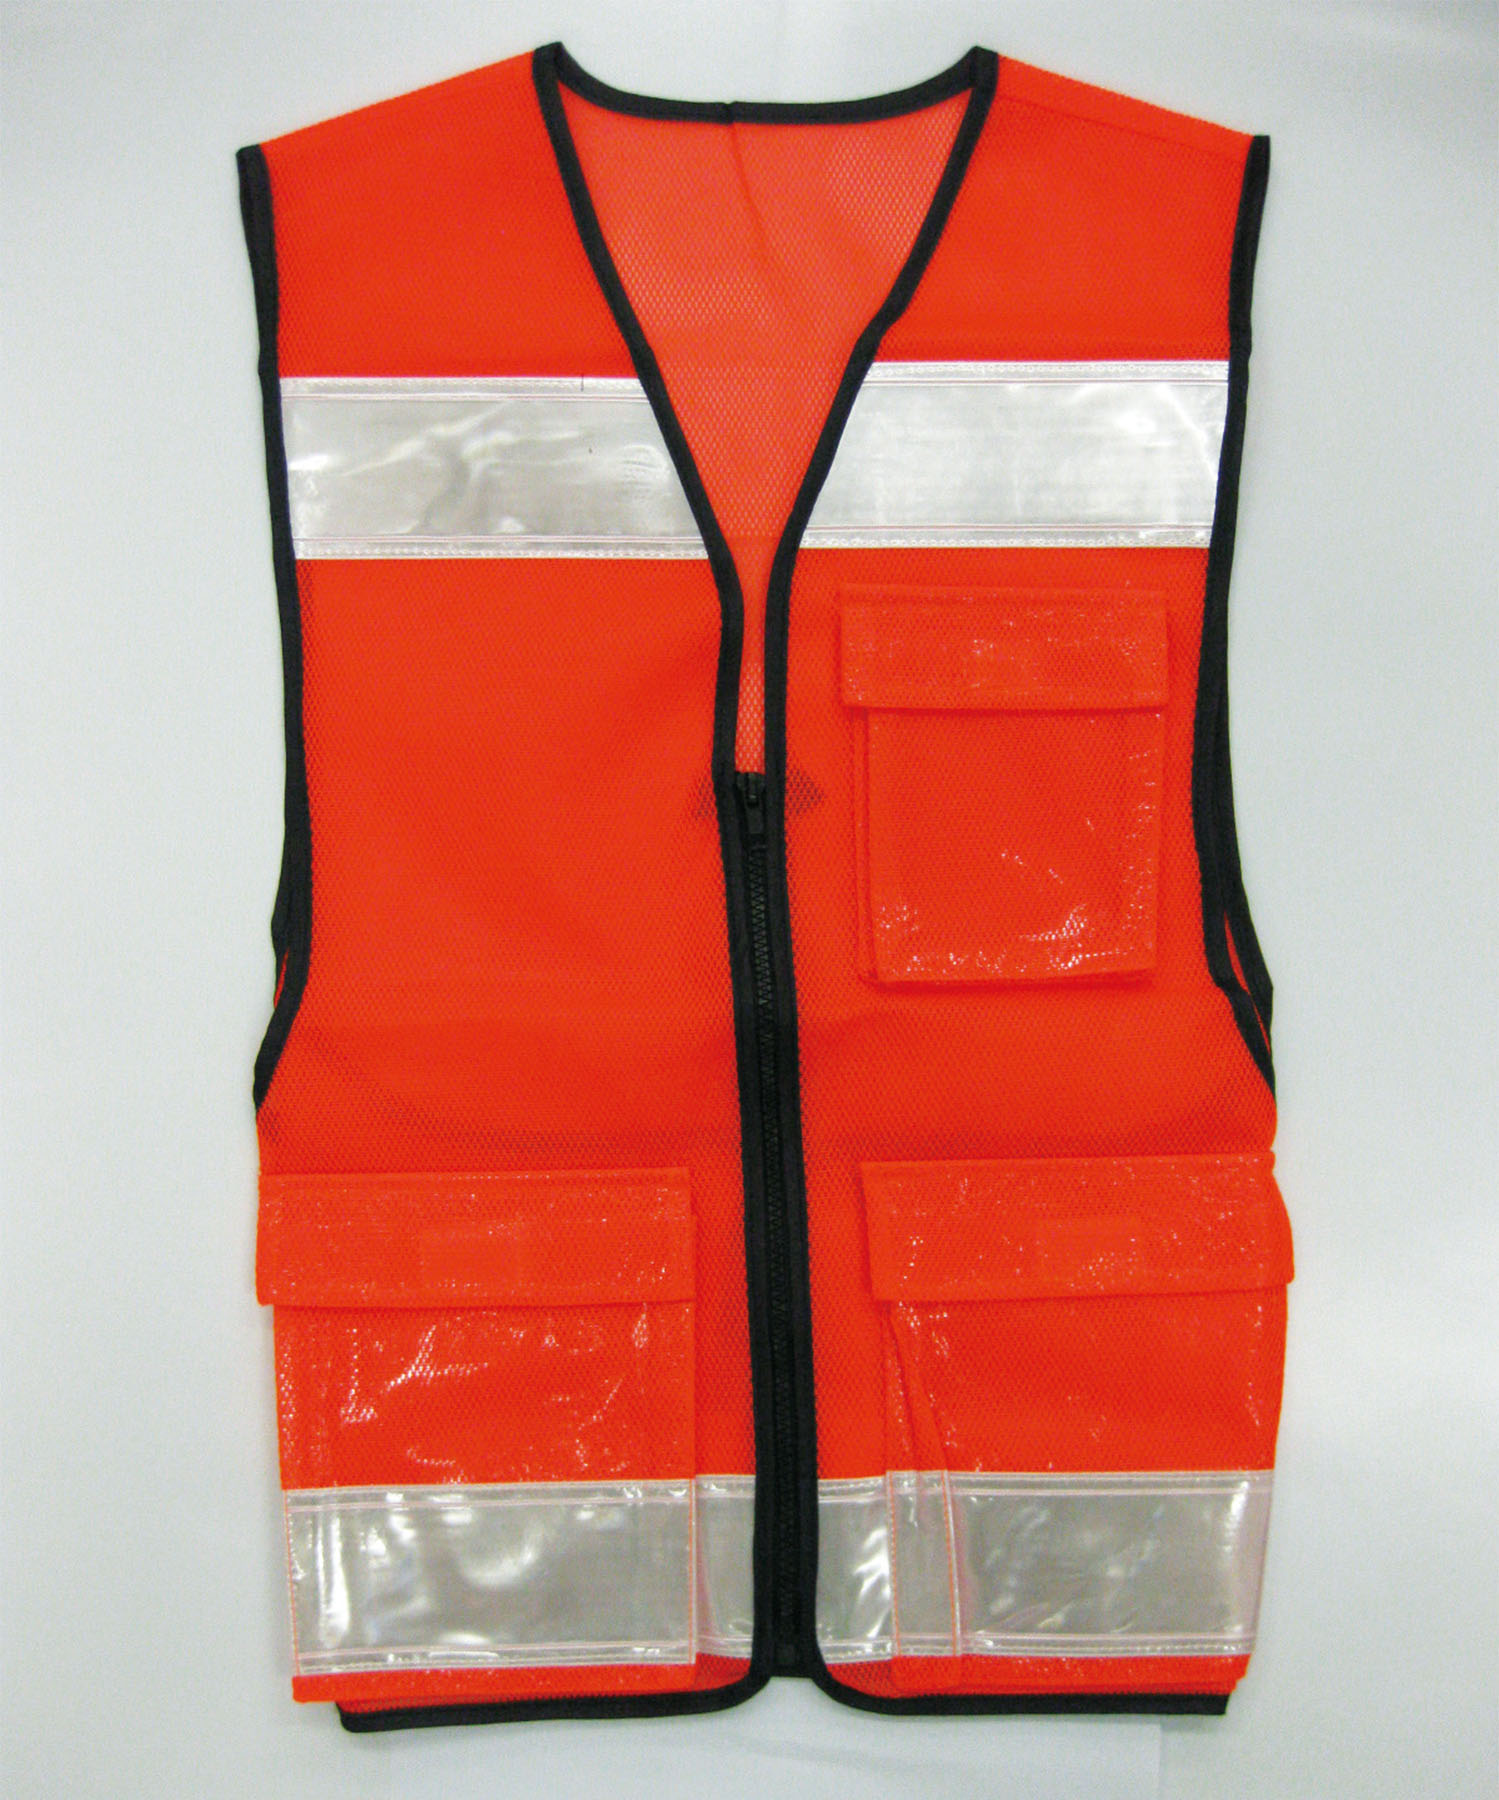 多機能ベスト 蛍光オレンジ 安全用品 標識 反射ベスト 身に付ける安全用品